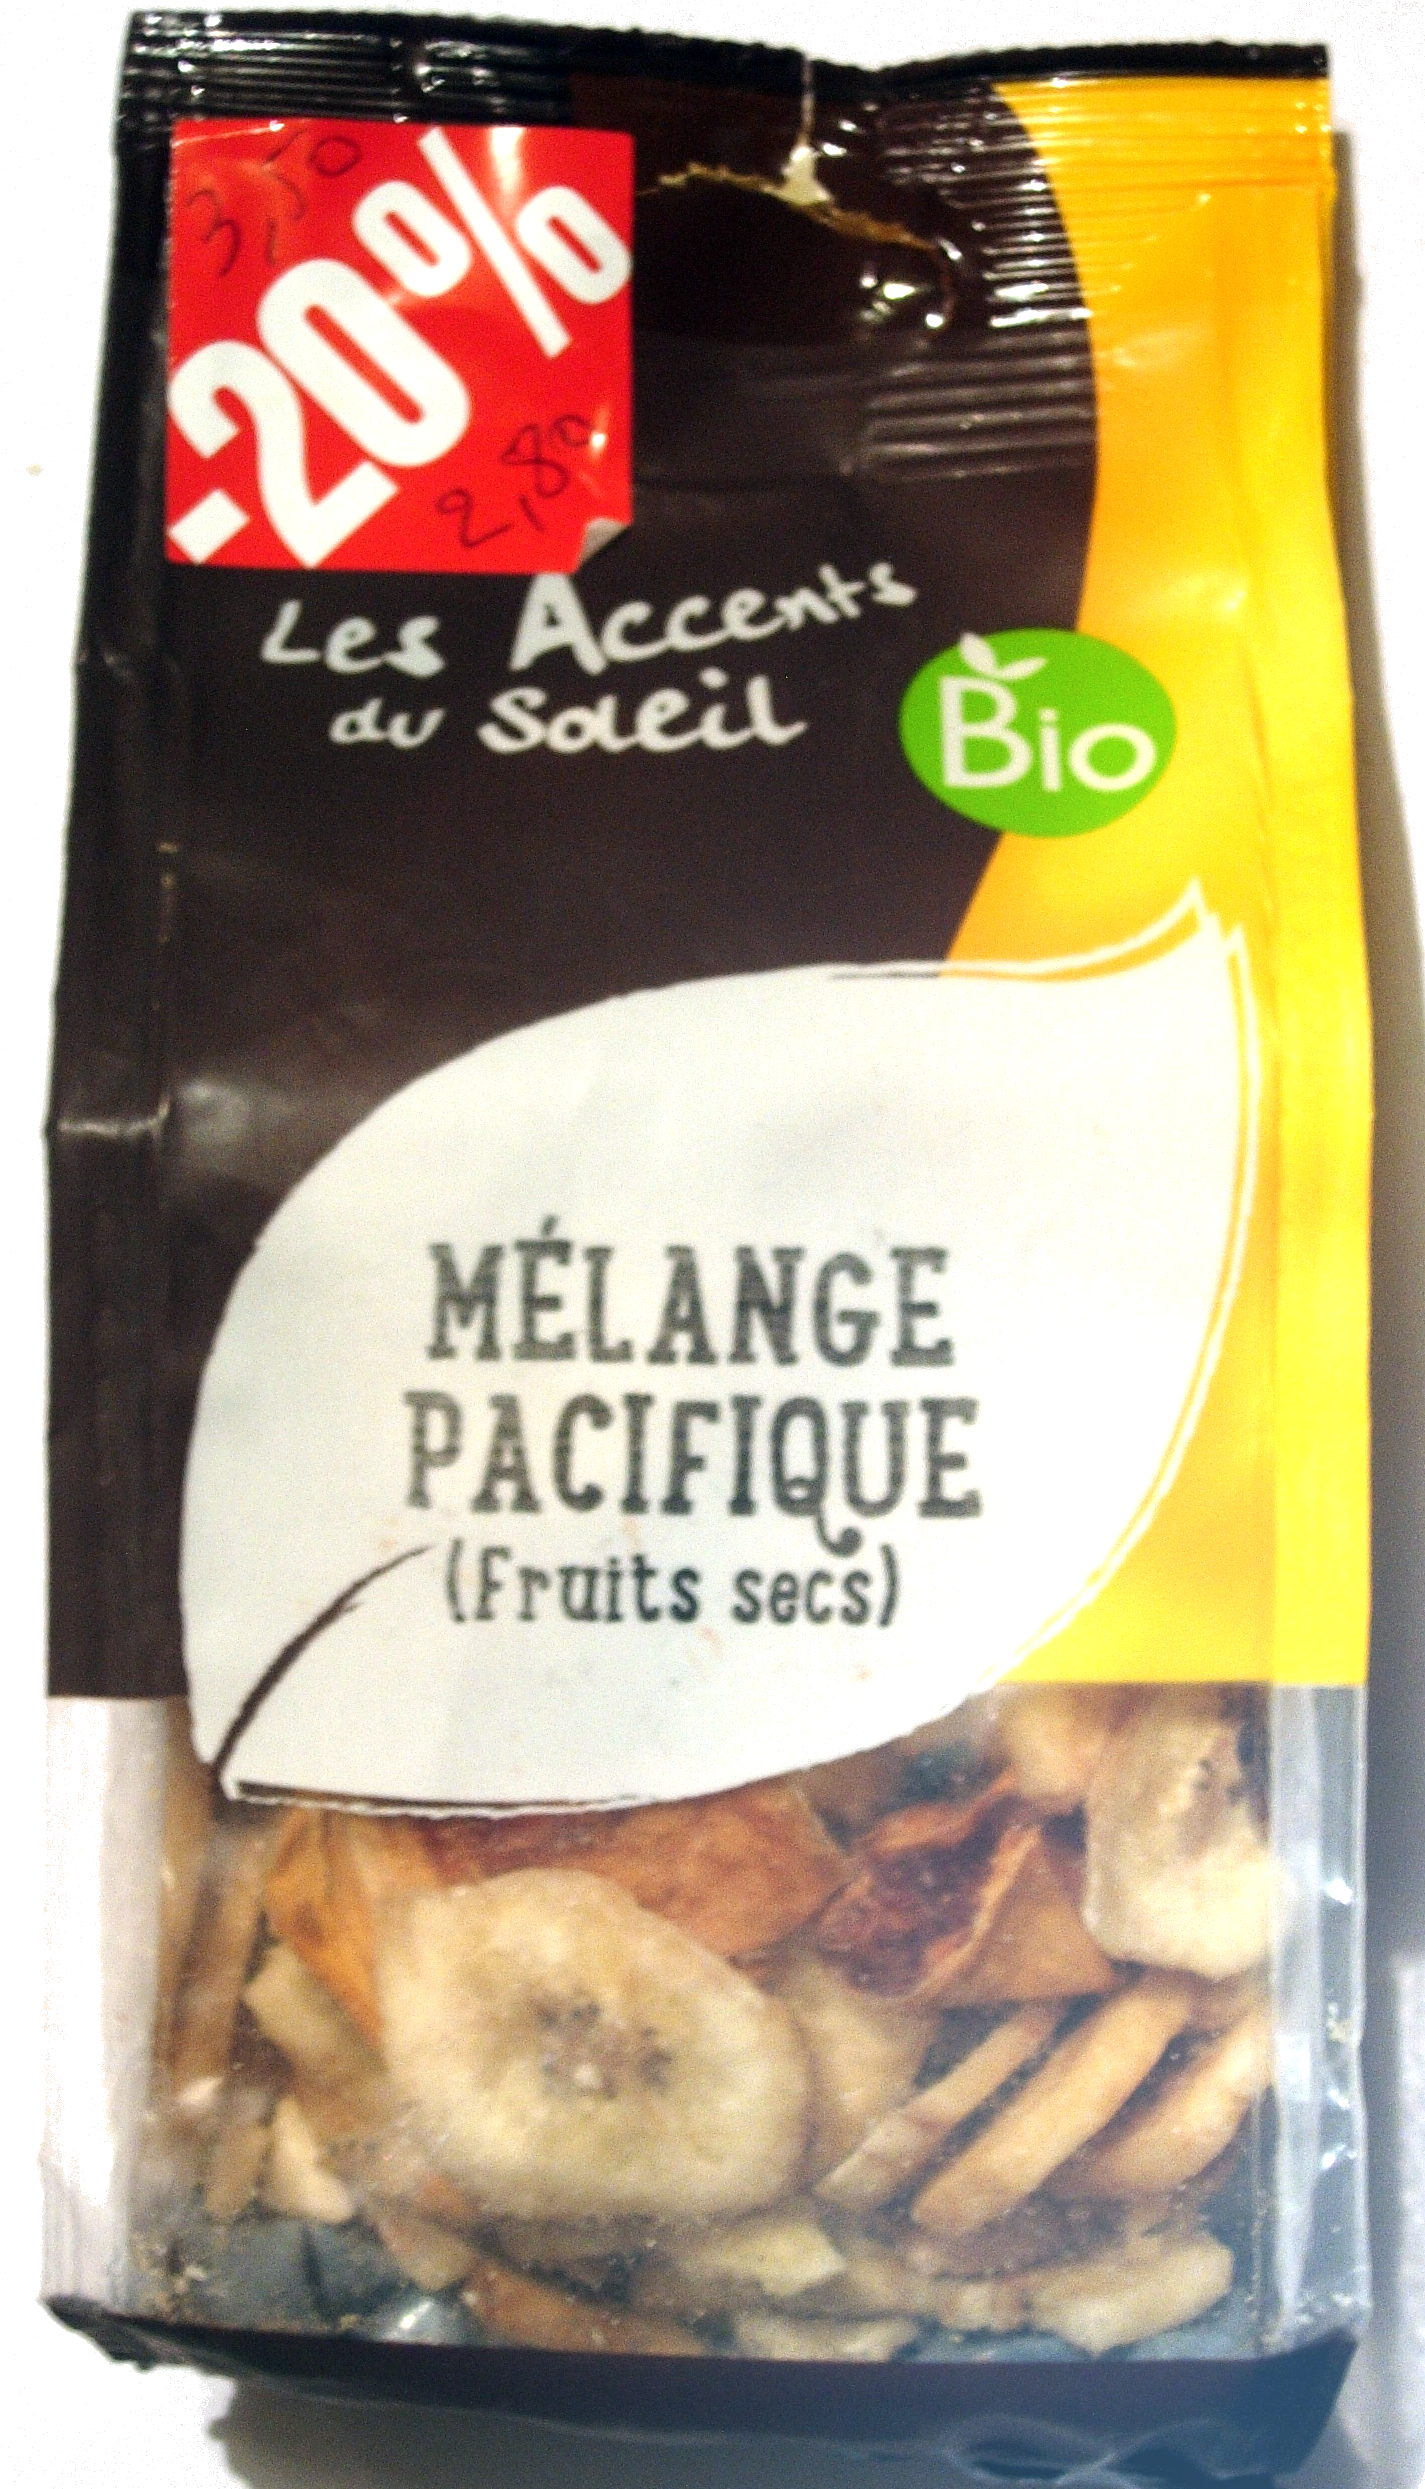 Mélange pacifique (Fruits secs) bio - Product - fr